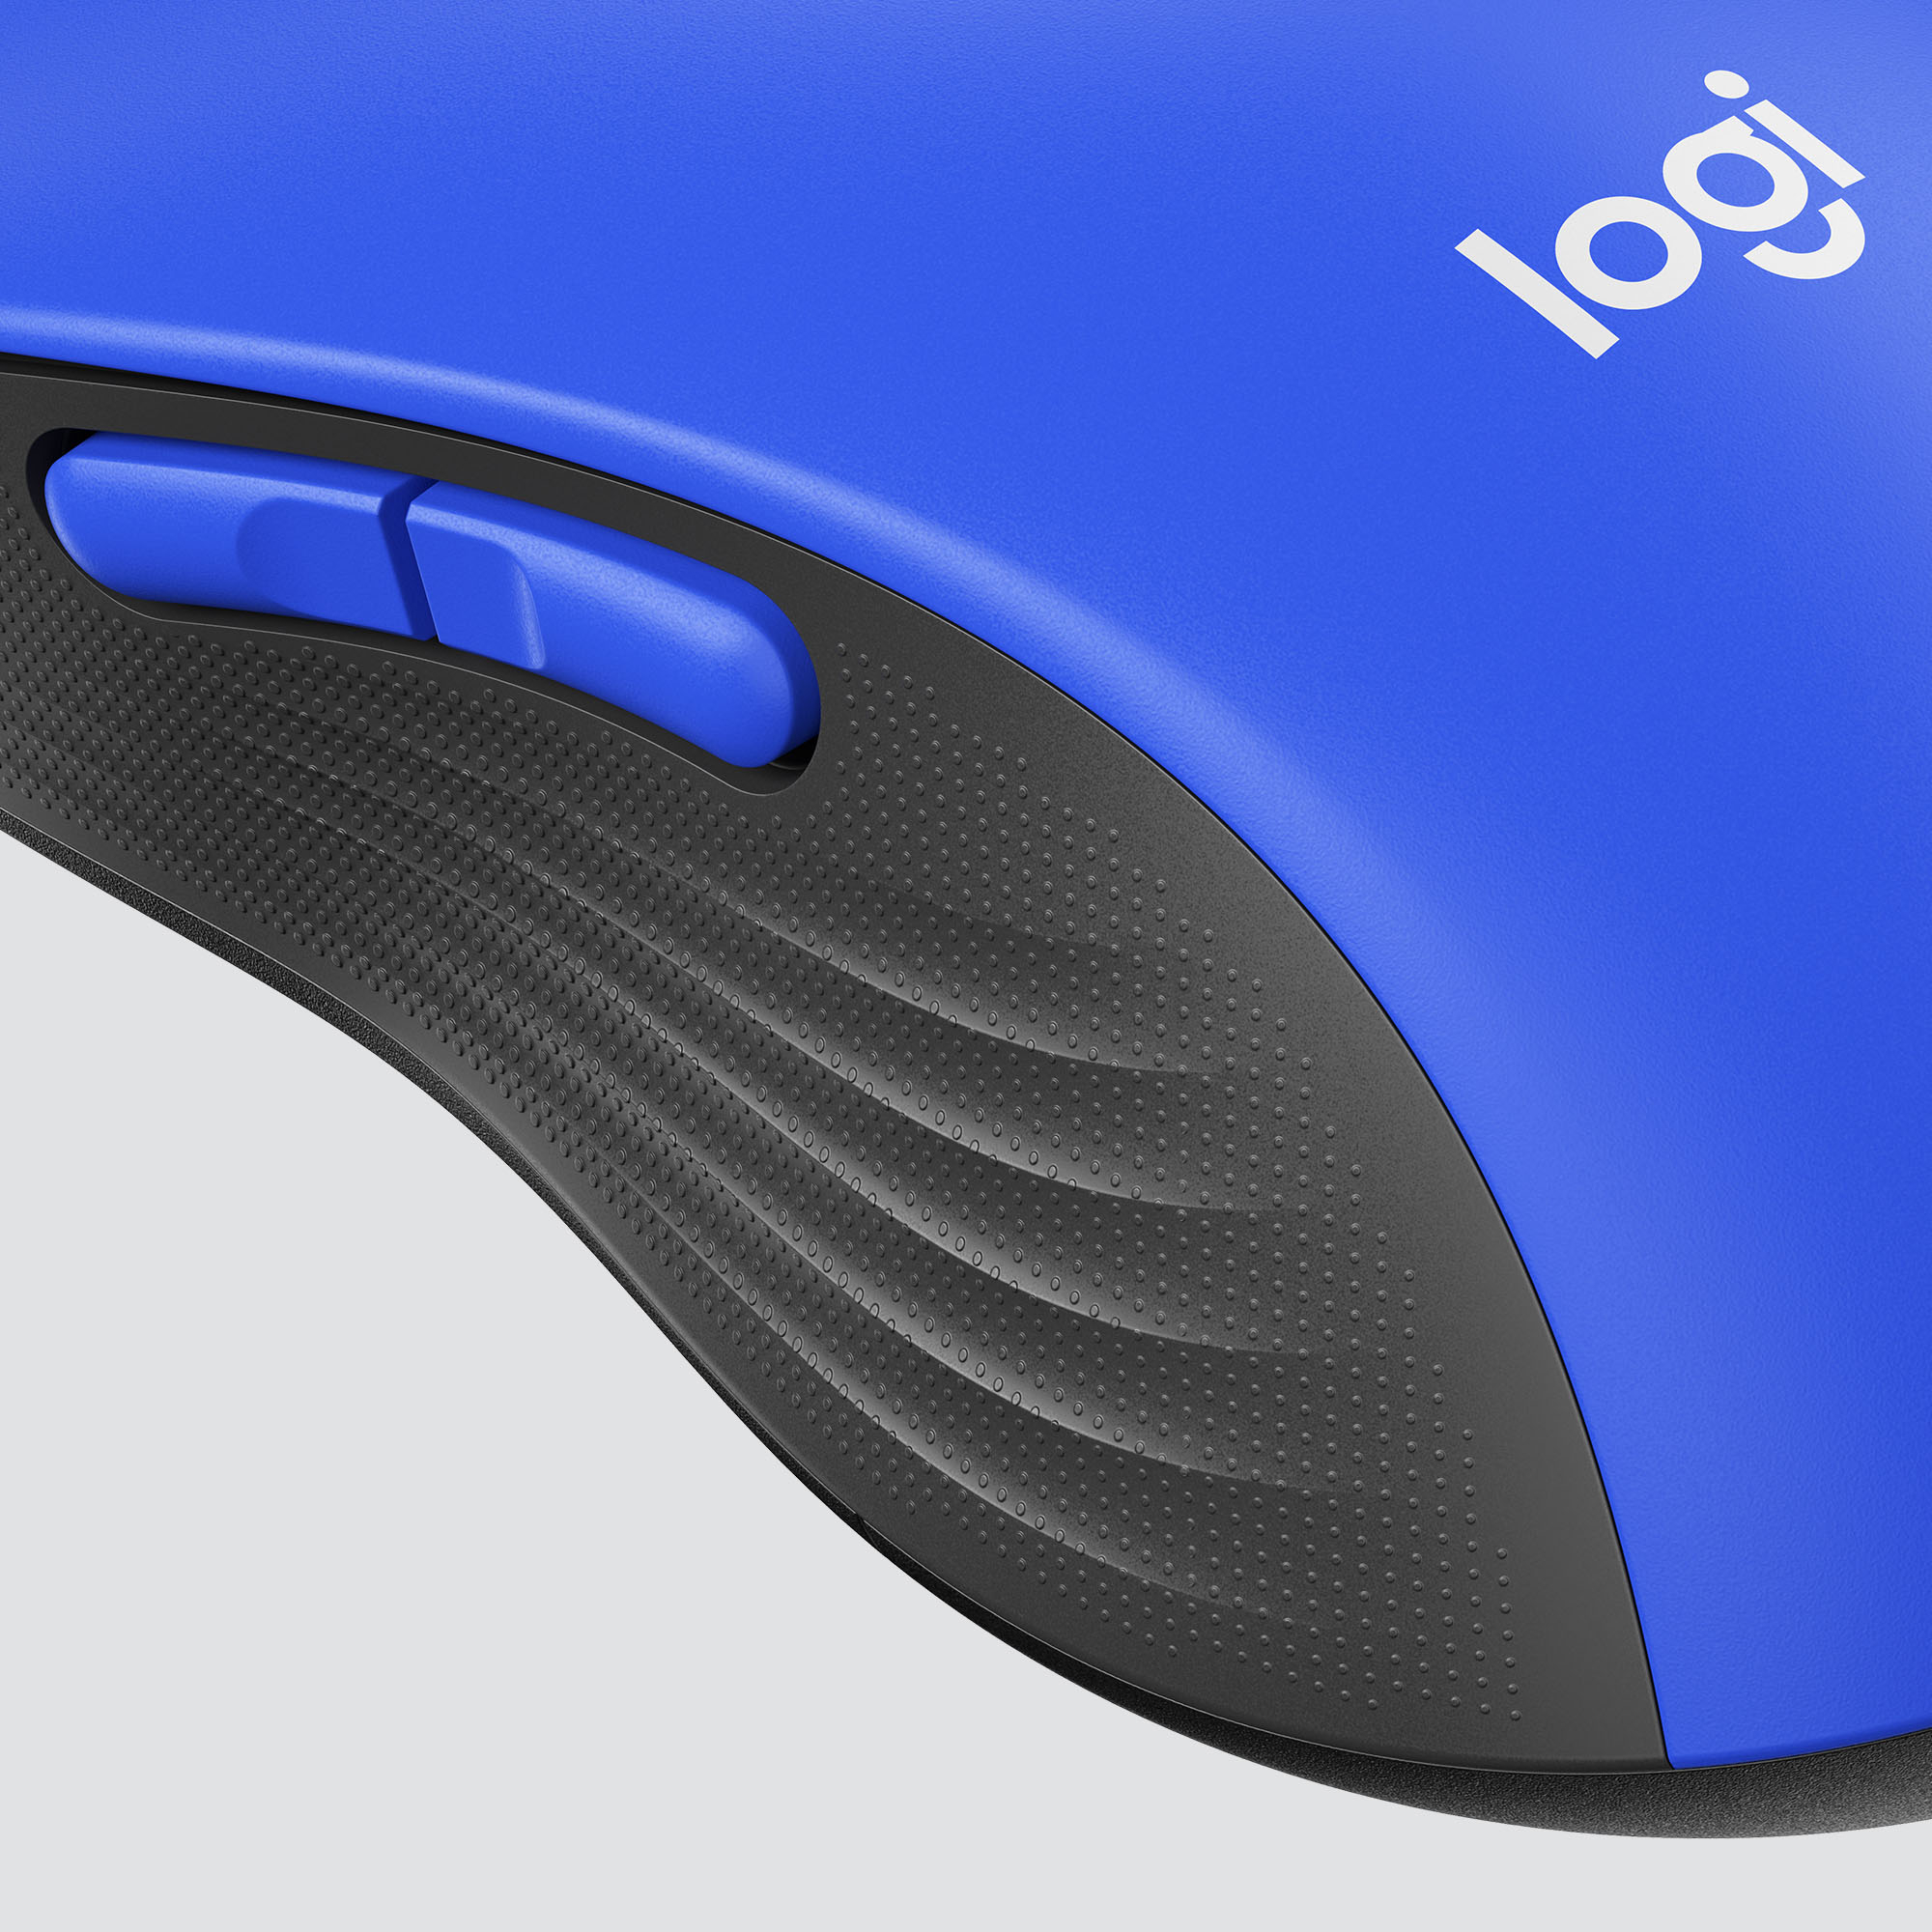 Logitech M650 Signature Mouse (Larger) - Blue